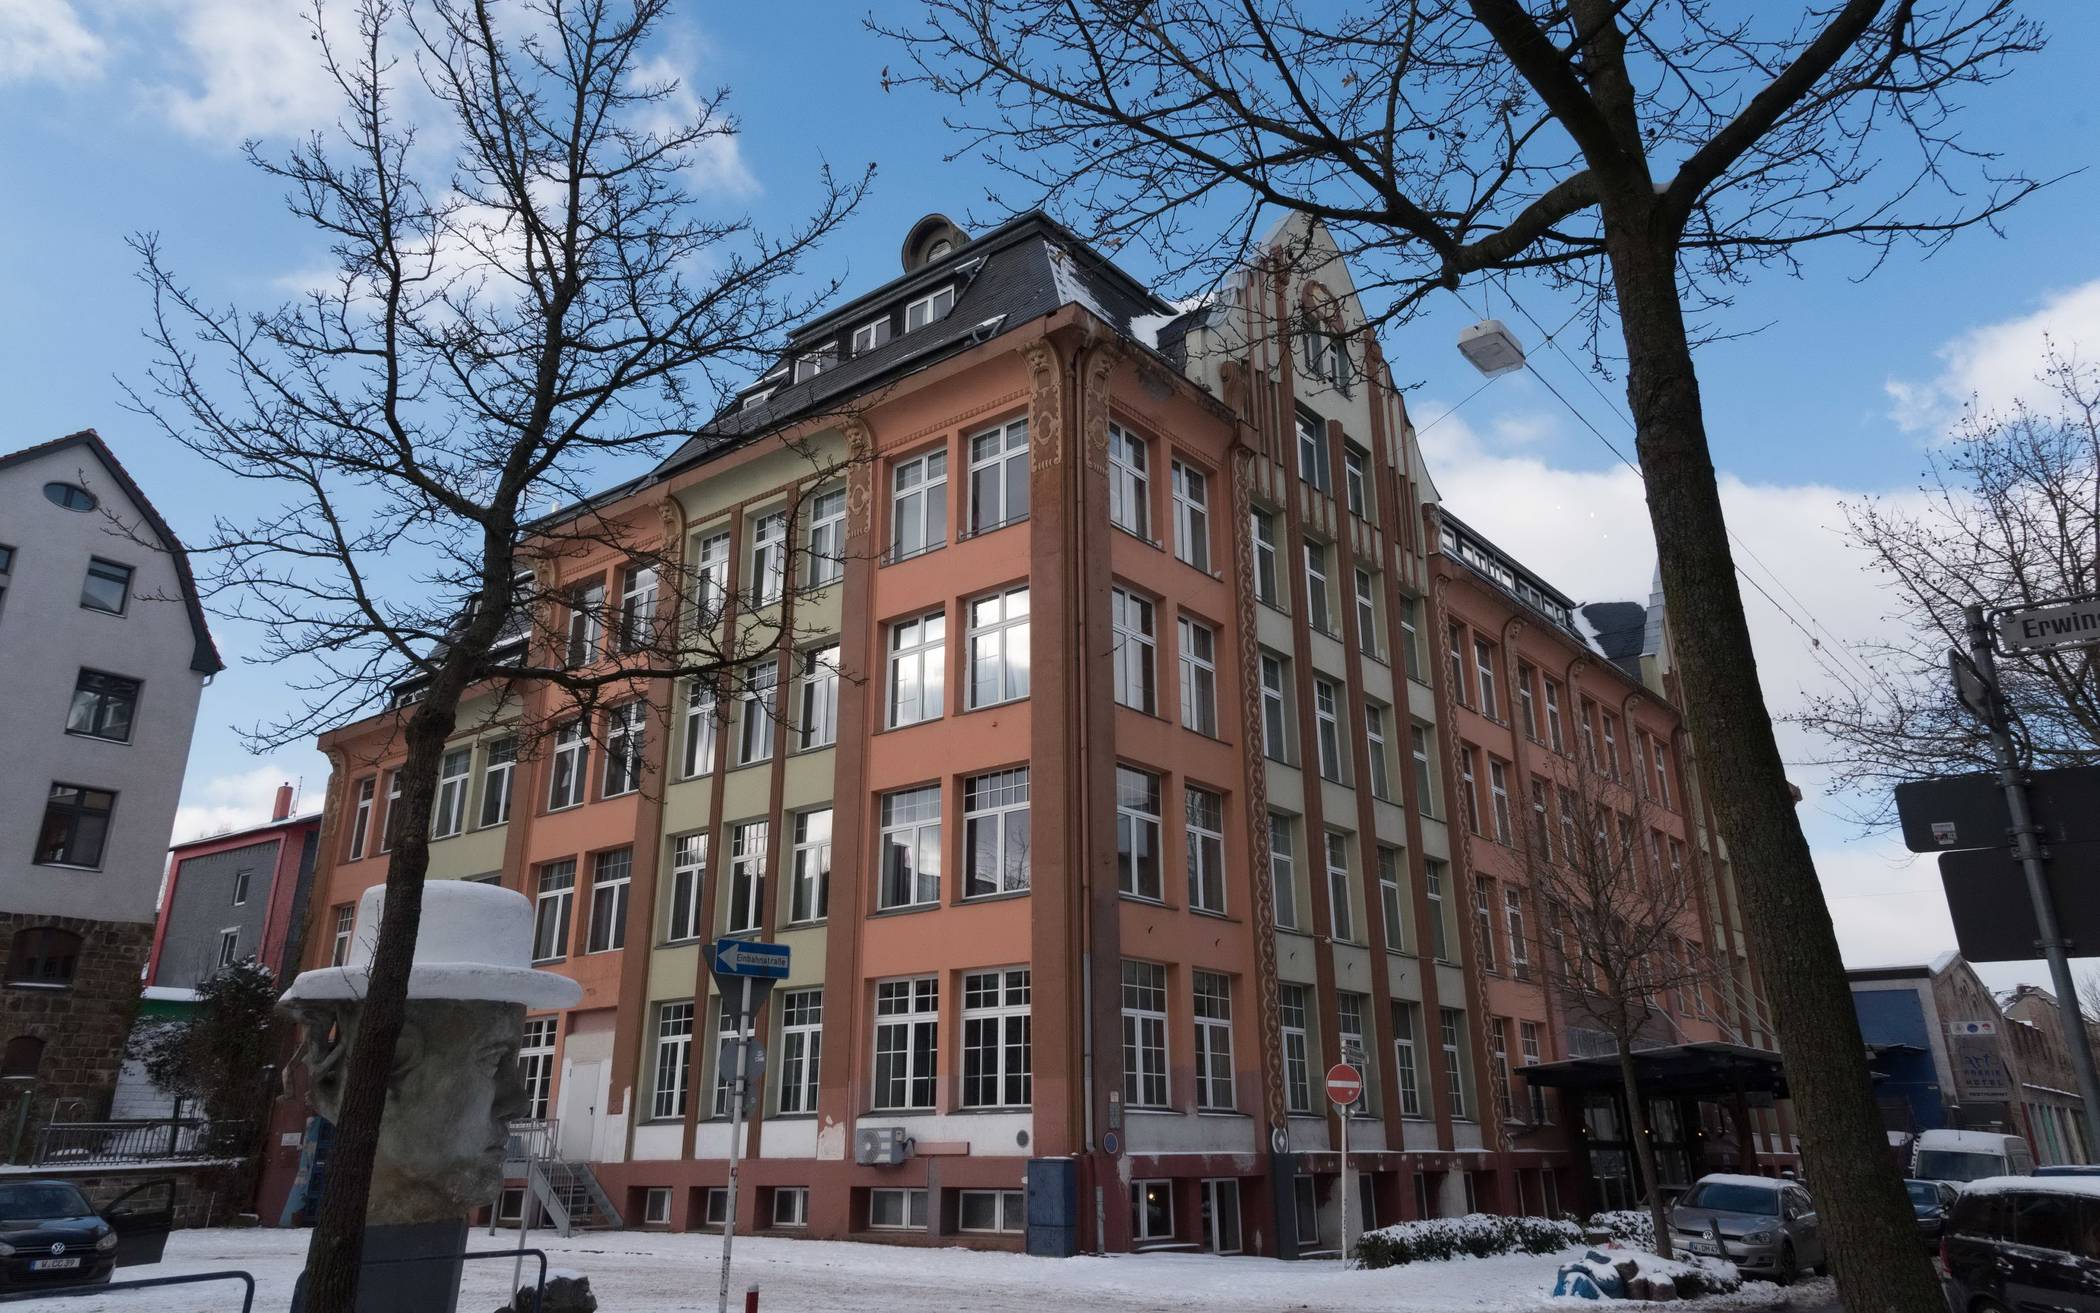  In das ehemalige „Art-Hotel“ in Heckinghausen zieht die siebte Wuppertaler Gesamtschule ein. 